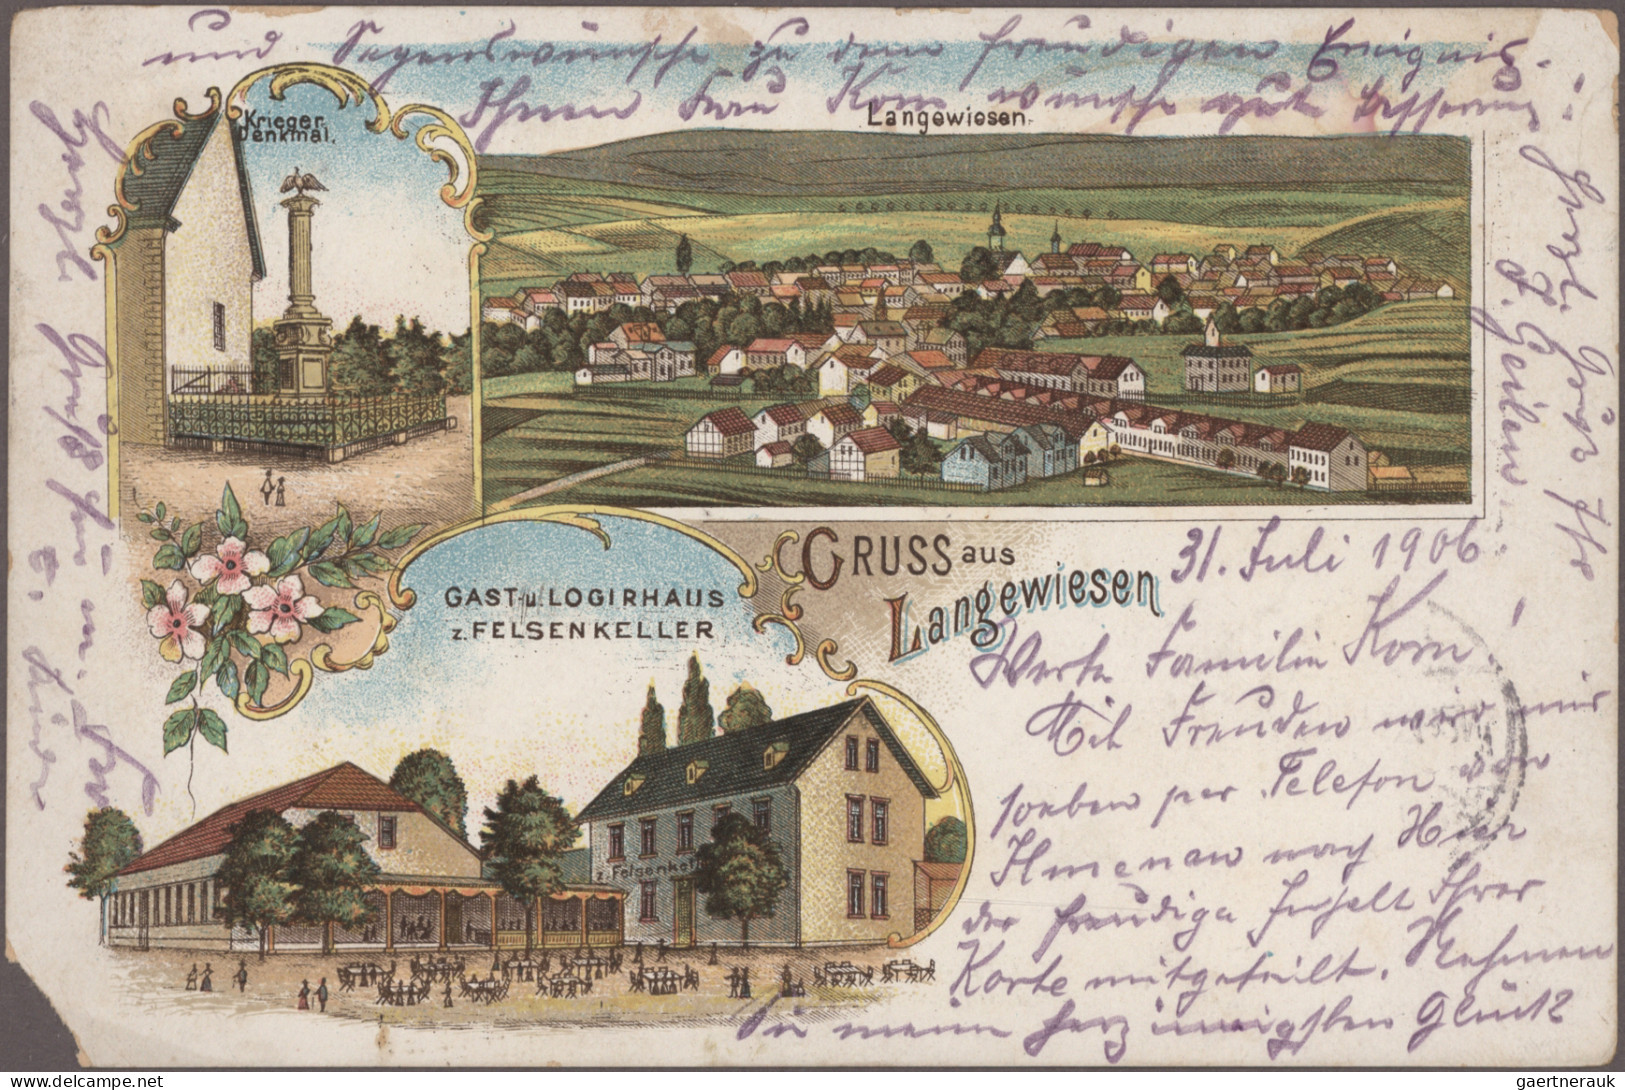 Ansichtskarten: Thüringen: THÜRINGEN, kleine Schachtel mit ca. 60 alten Ansichts